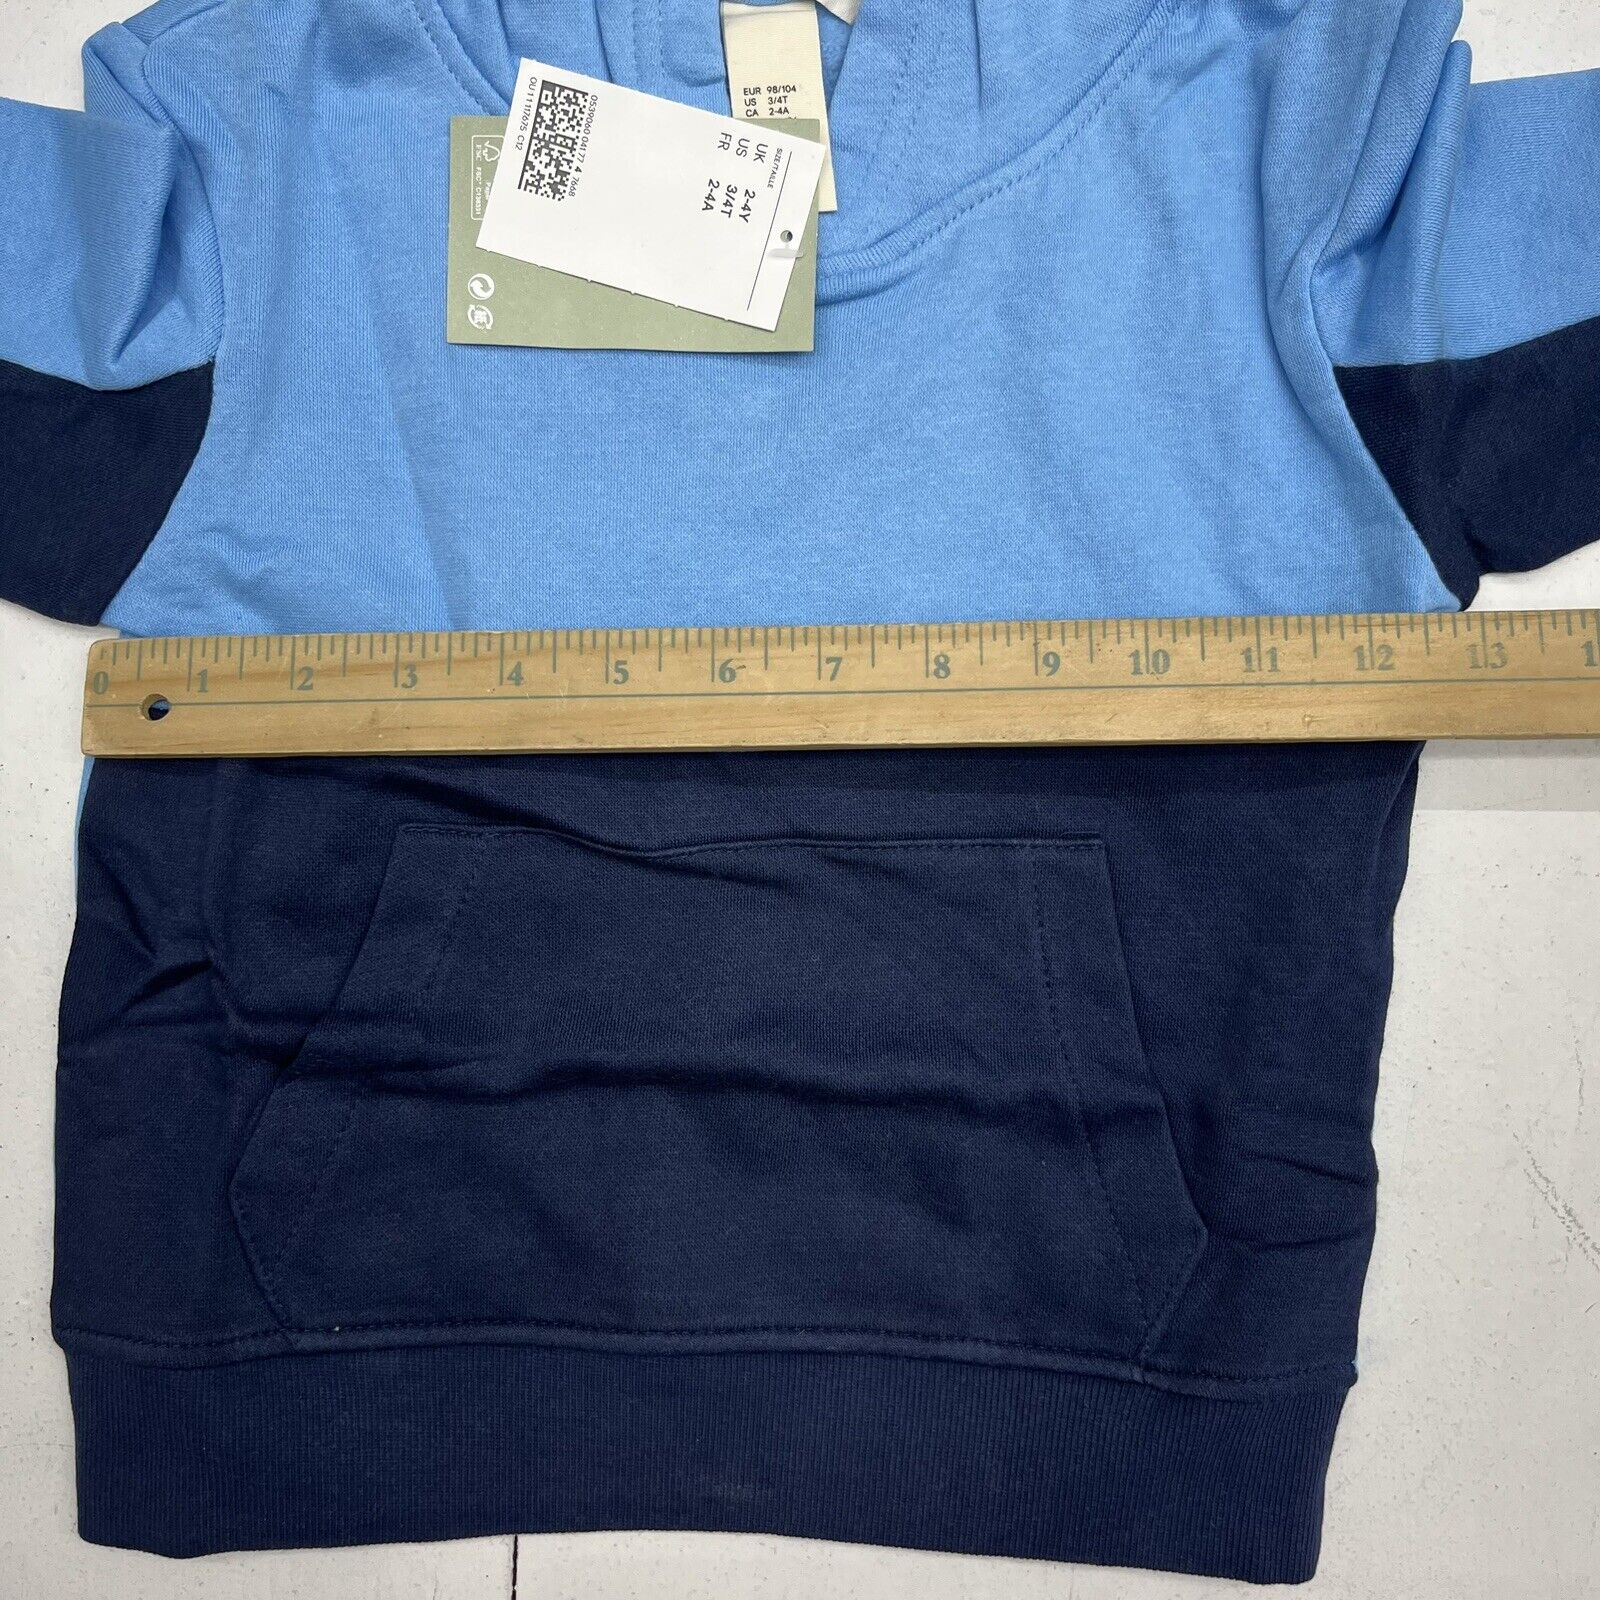 Boys - Black Cotton T-shirt - Size: 3/4T (2-4Y) - H&M